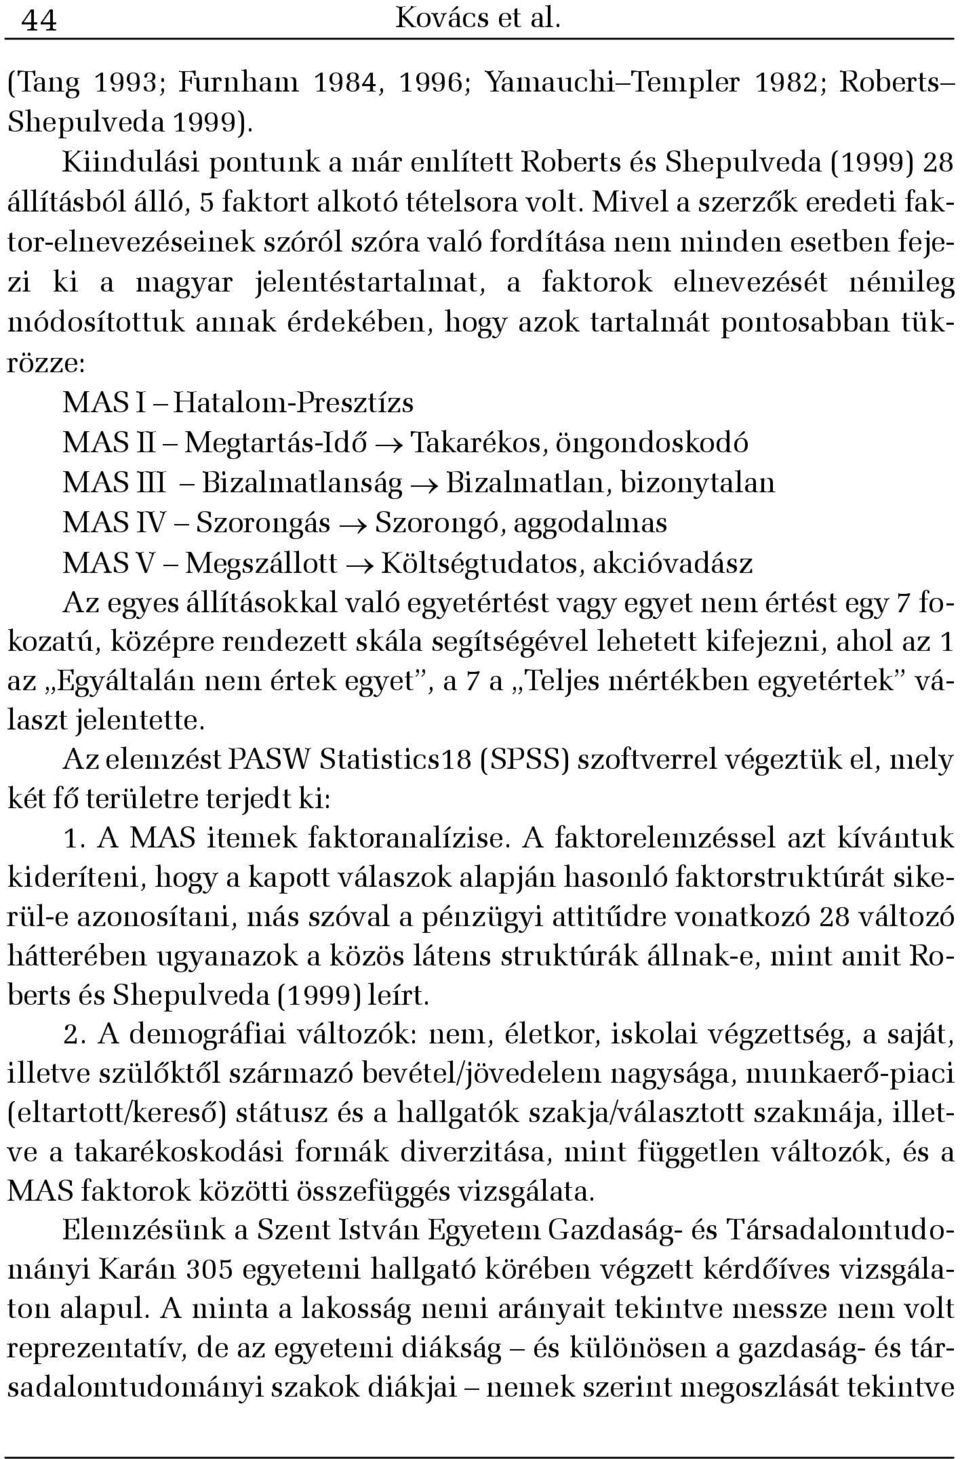 Mivel a szerzõk eredeti faktor-elnevezéseinek szóról szóra való fordítása nem minden esetben fejezi ki a magyar jelentéstartalmat, a faktorok elnevezését némileg módosítottuk annak érdekében, hogy